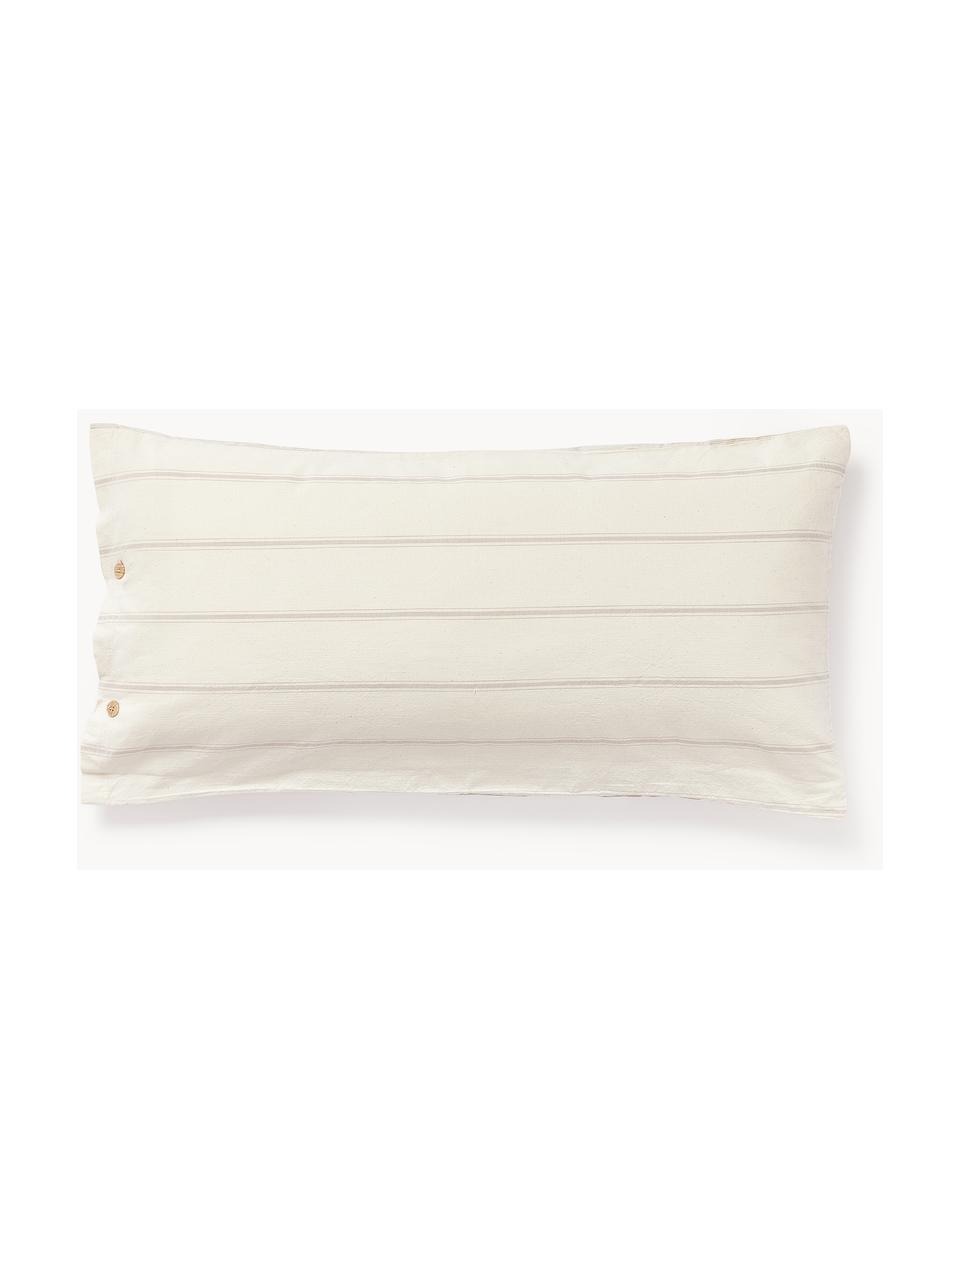 Poszewka na poduszkę z bawełny Caspian, Beżowy, złamana biel, S 40 x L 80 cm